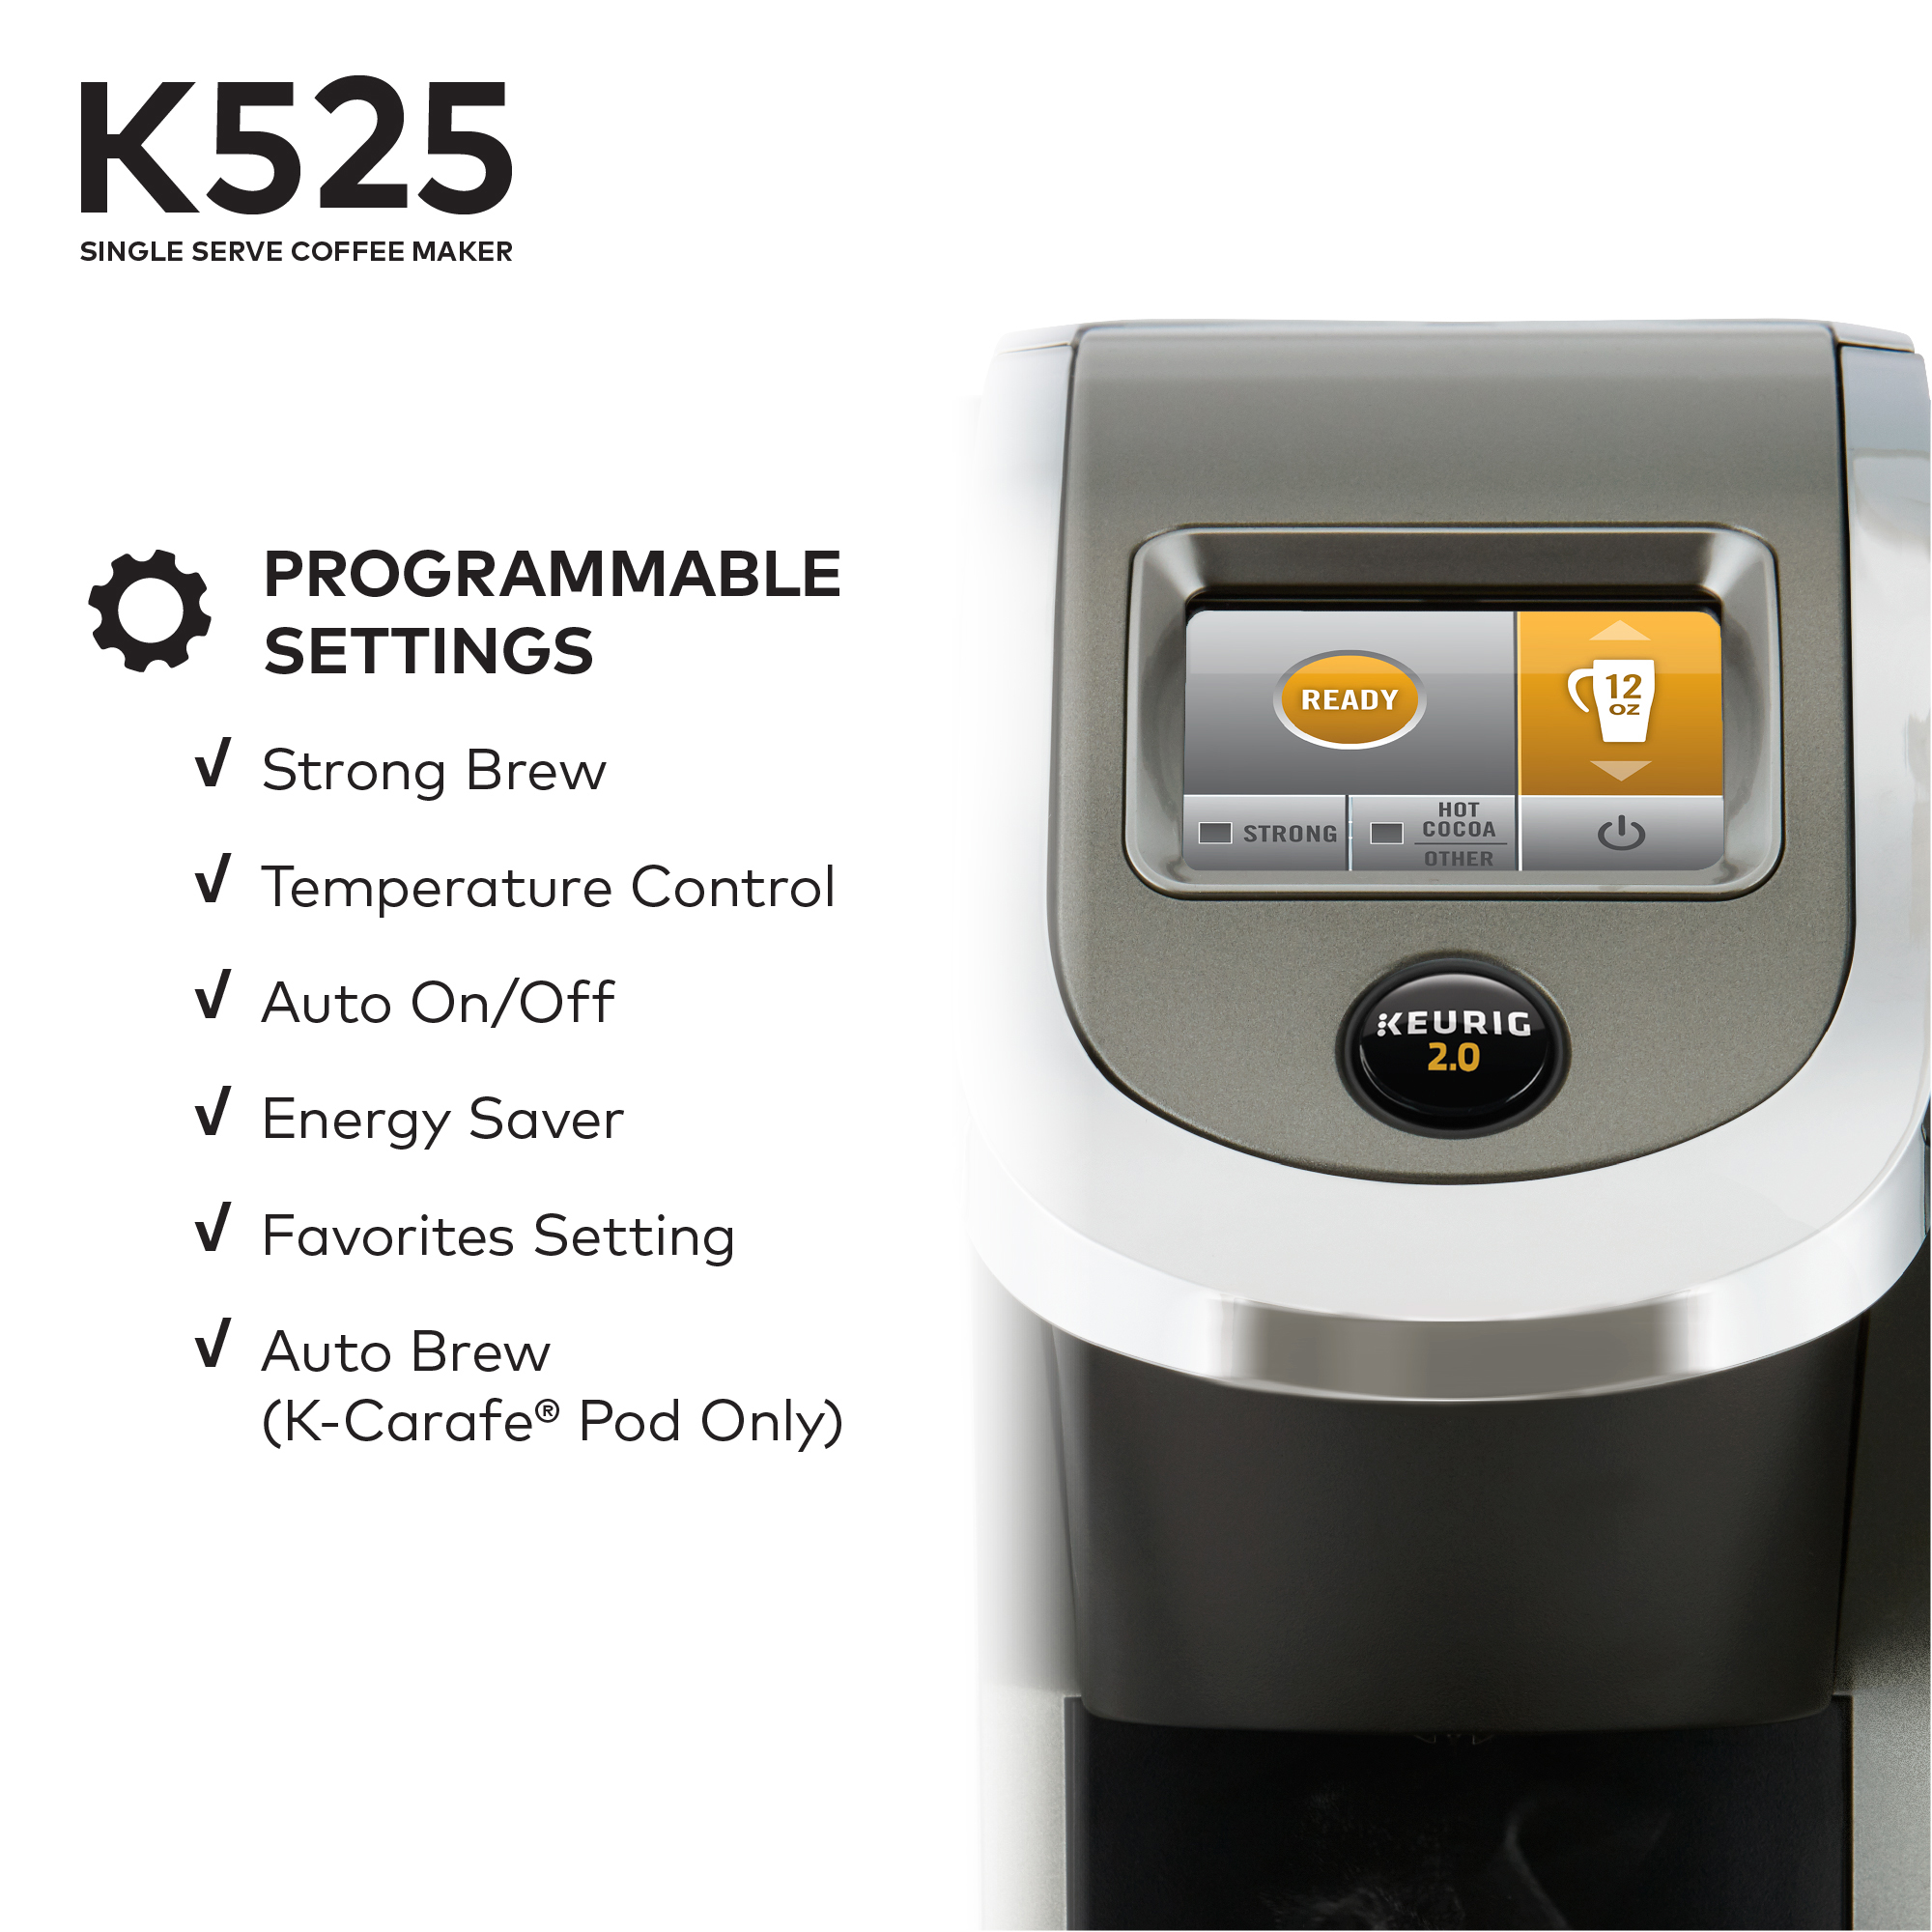 Keurig K525 Single Serve K-Cup Coffee Maker - image 4 of 11